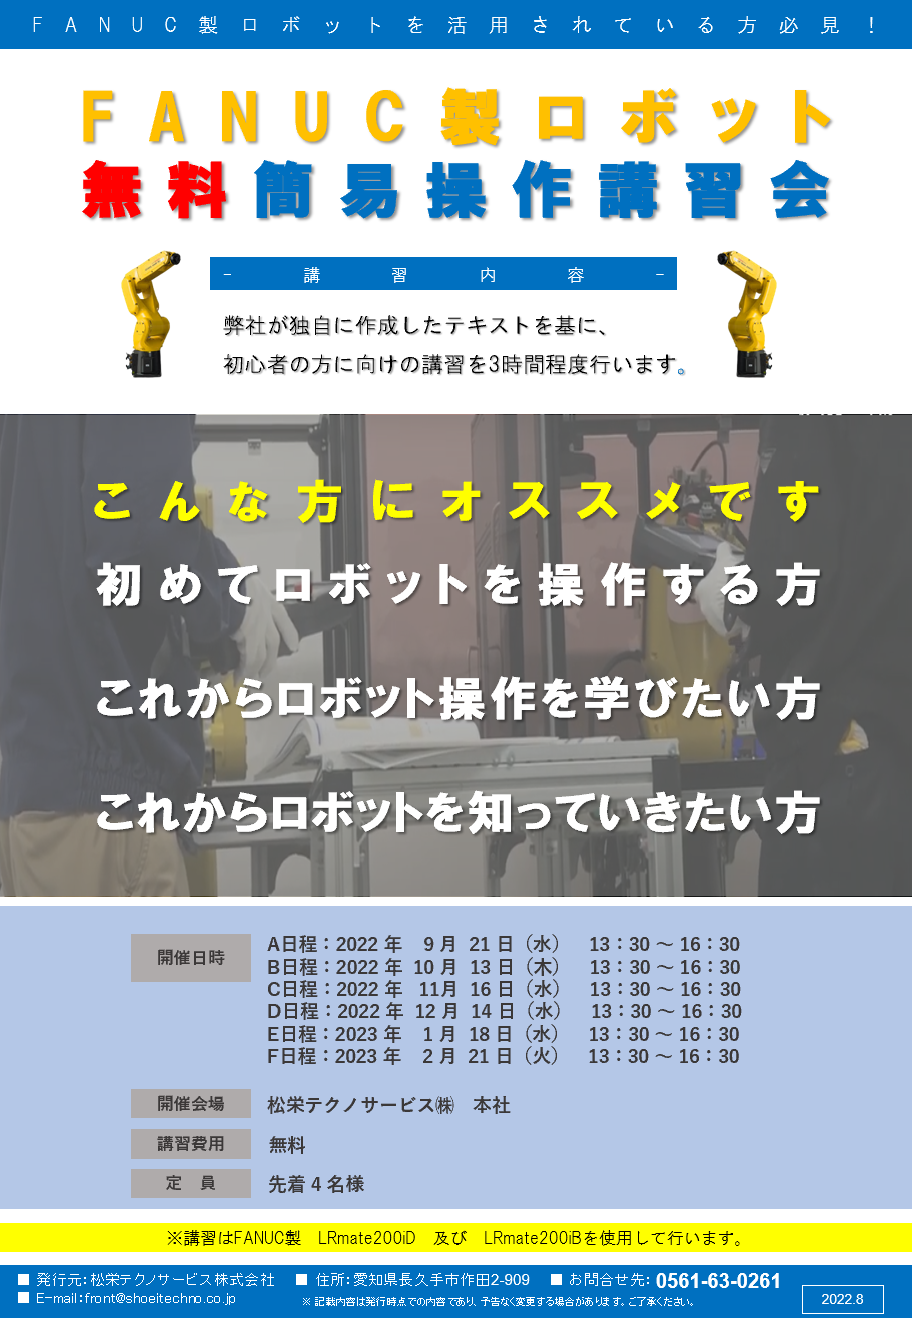 【愛知県開催】FANUC（ファナック）製ロボット無料簡易操作講習会